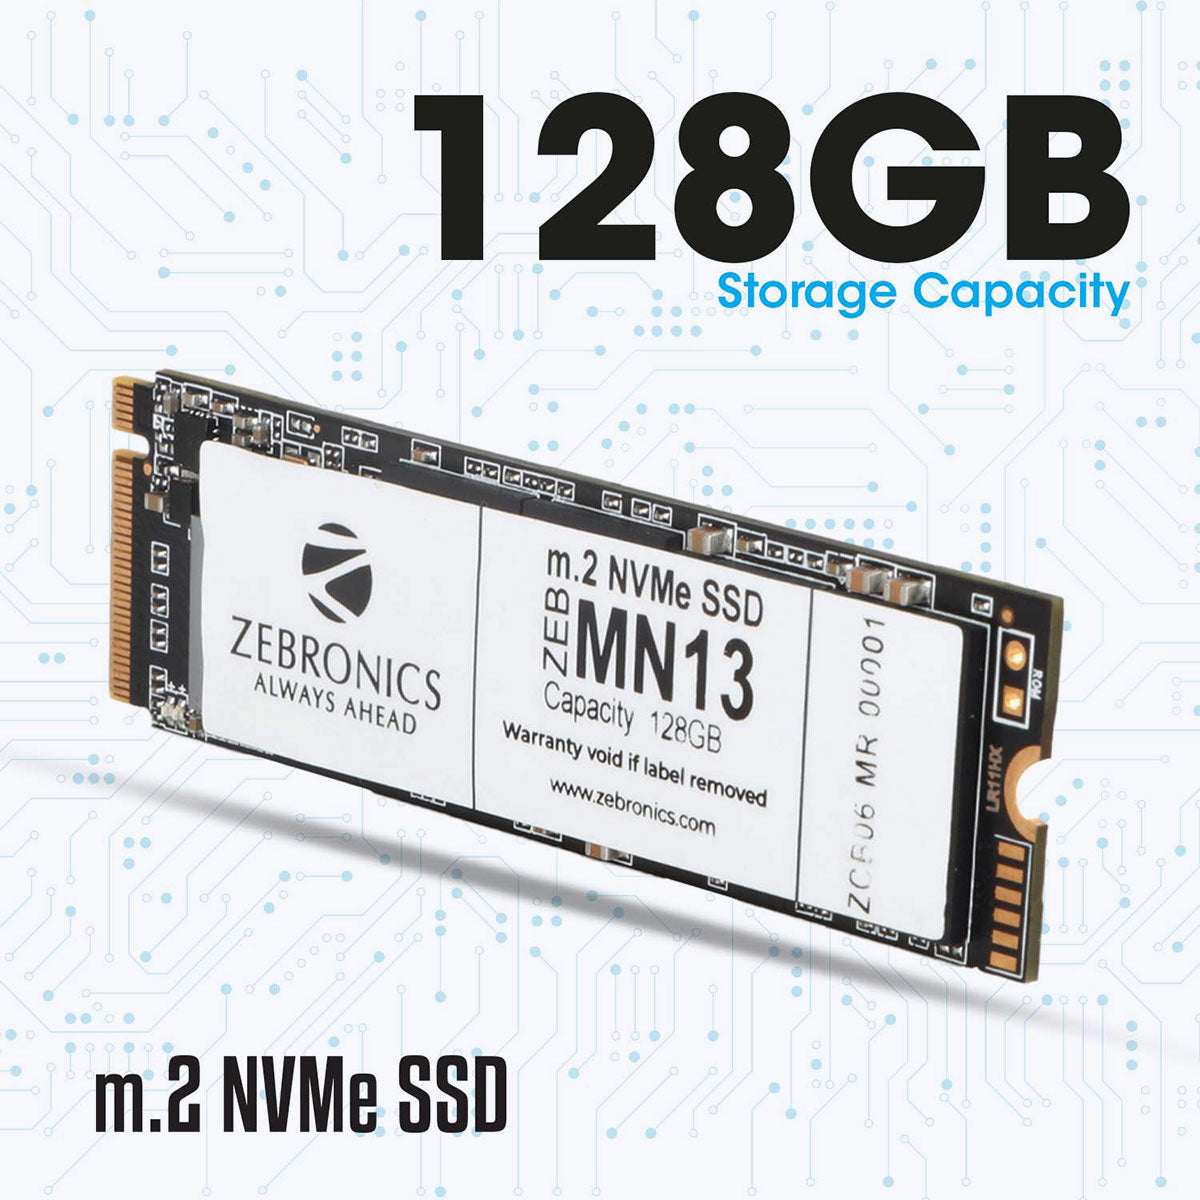 ZEB-MN13 - SSD - Zebrronics